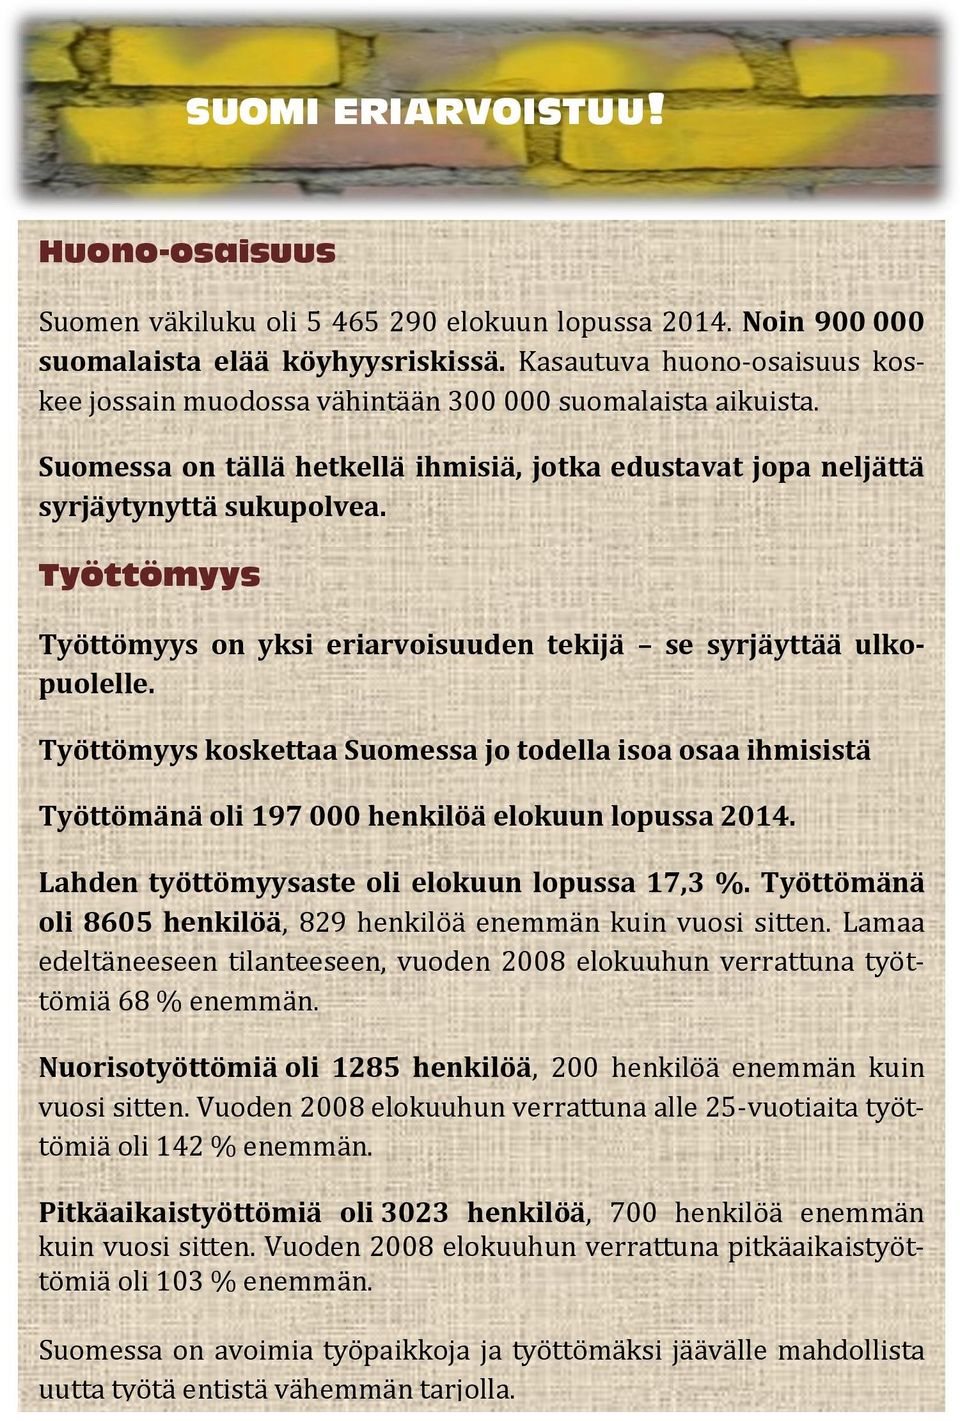 Työttömyys Työttömyys on yksi eriarvoisuuden tekijä se syrjäyttää ulkopuolelle. Työttömyys koskettaa Suomessa jo todella isoa osaa ihmisistä Työttömänä oli 197 000 henkilöä elokuun lopussa 2014.